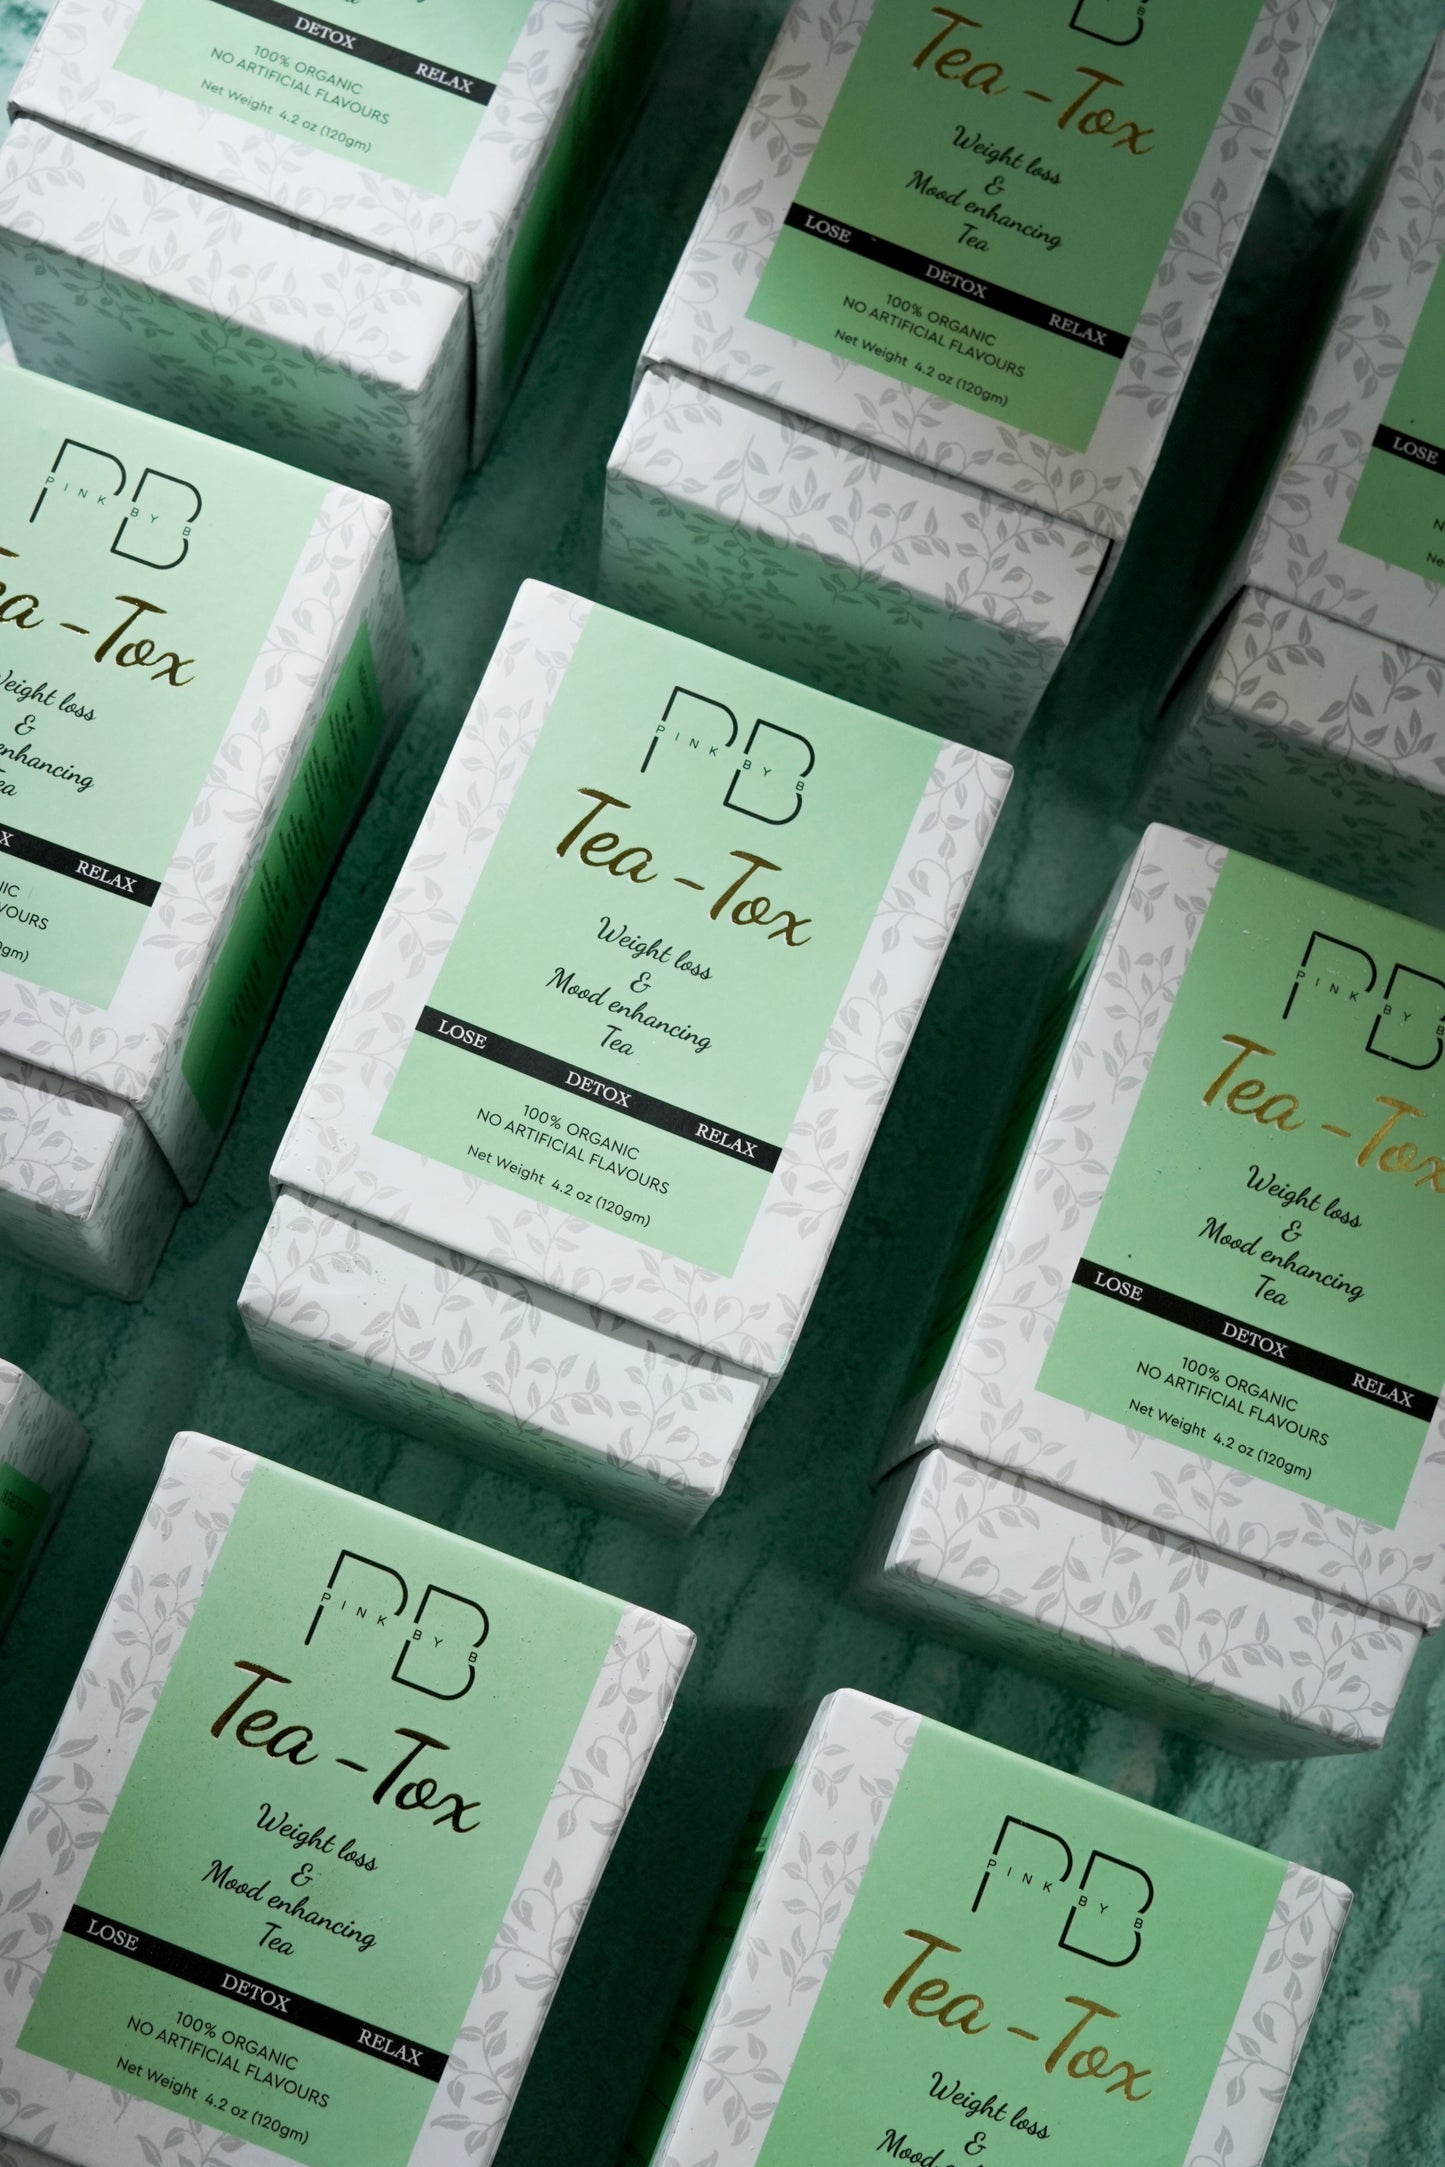 Tea-Tox (Weightloss & Mood Enhancing Tea)